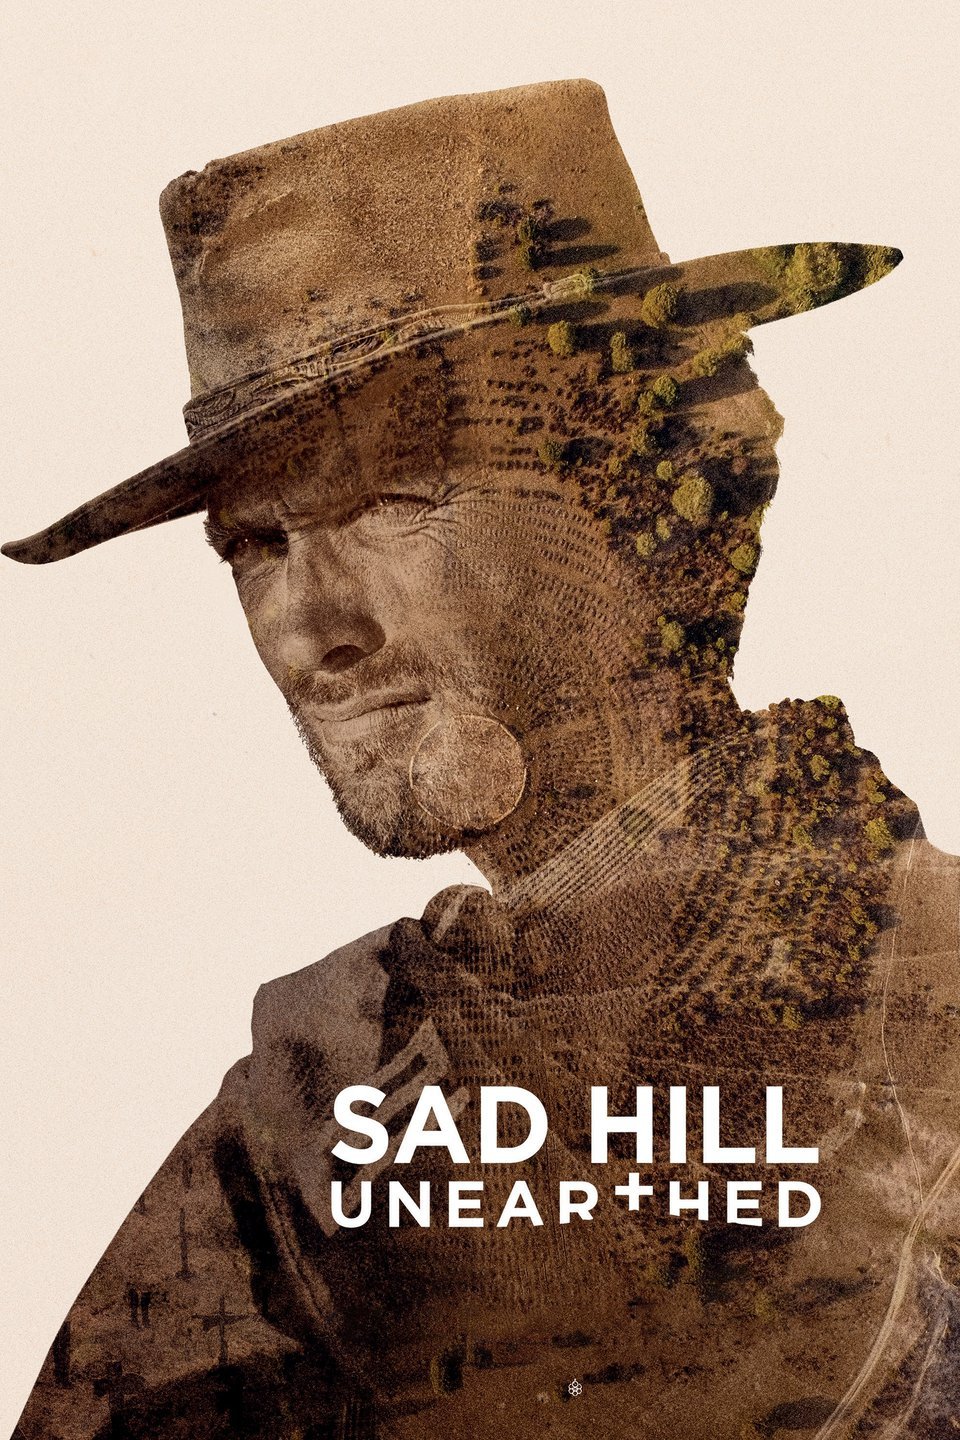 Sad Hill Unearthed / Desenterrando Sad Hill (2017)